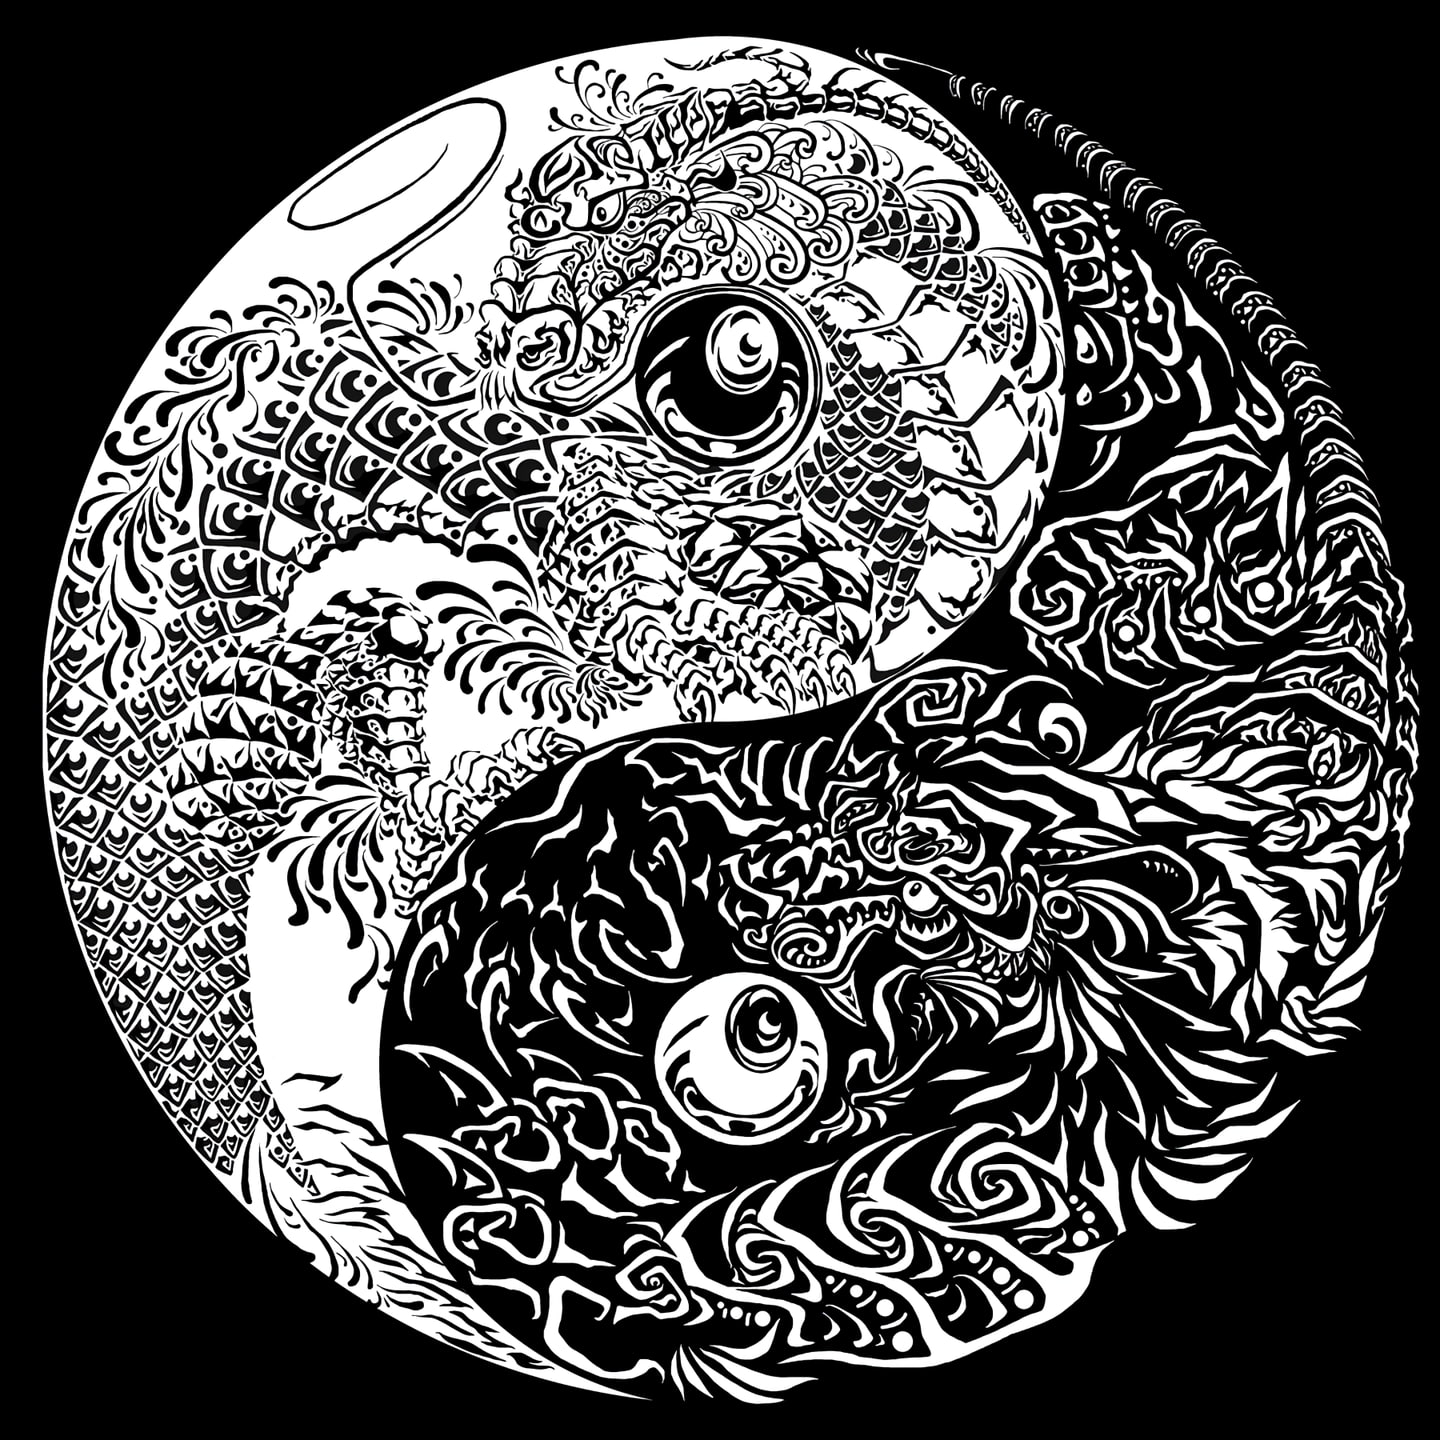 Yin and Yang, symbols, monochrome